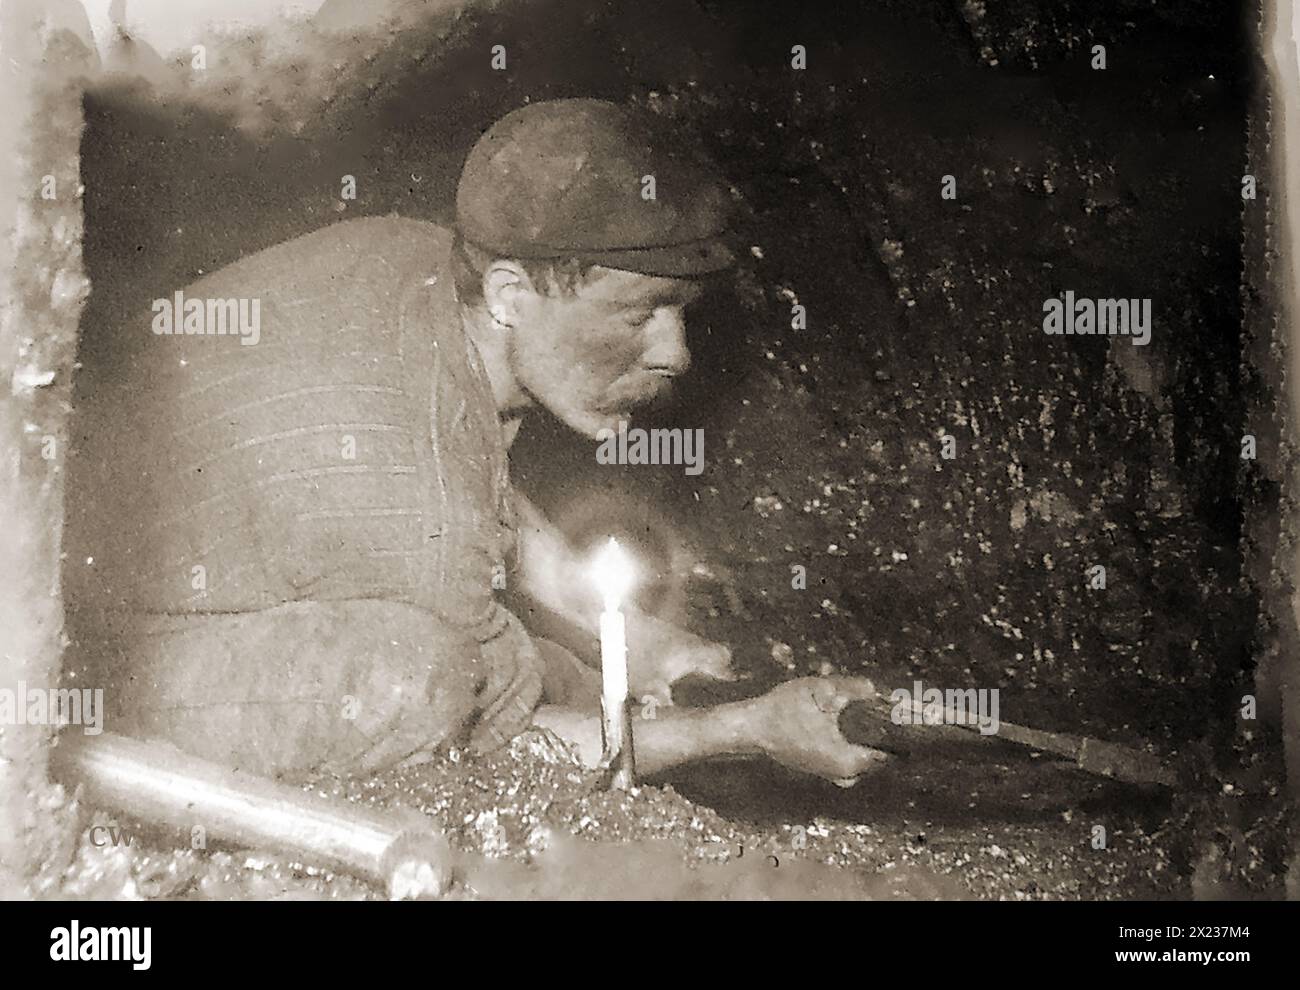 Kohlebergbau in Großbritannien. Ein altes Foto, das einen walisischen Kohlebergmann zeigt, der bei Kerzenlicht am Kohlegesicht arbeitet. Stockfoto